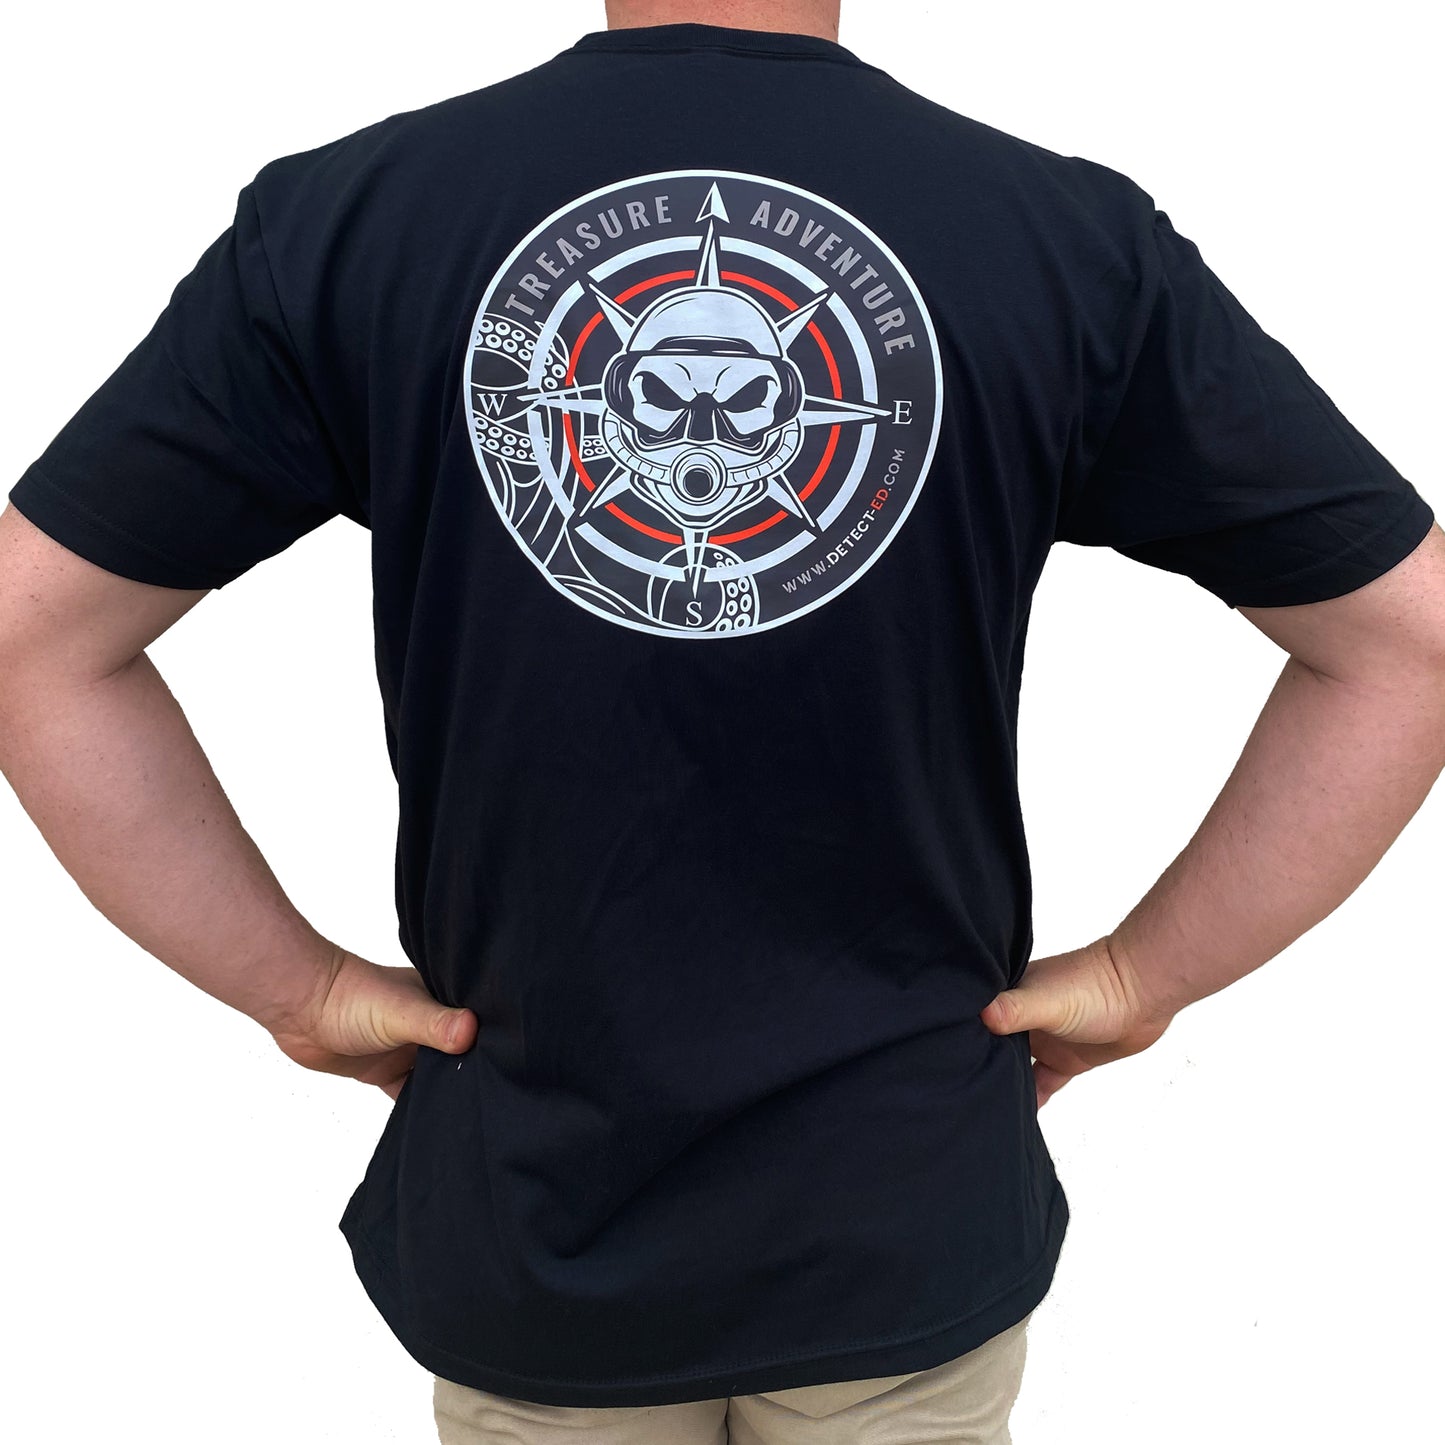 Detect-Ed Shirt (Limited Sizes Remaining)